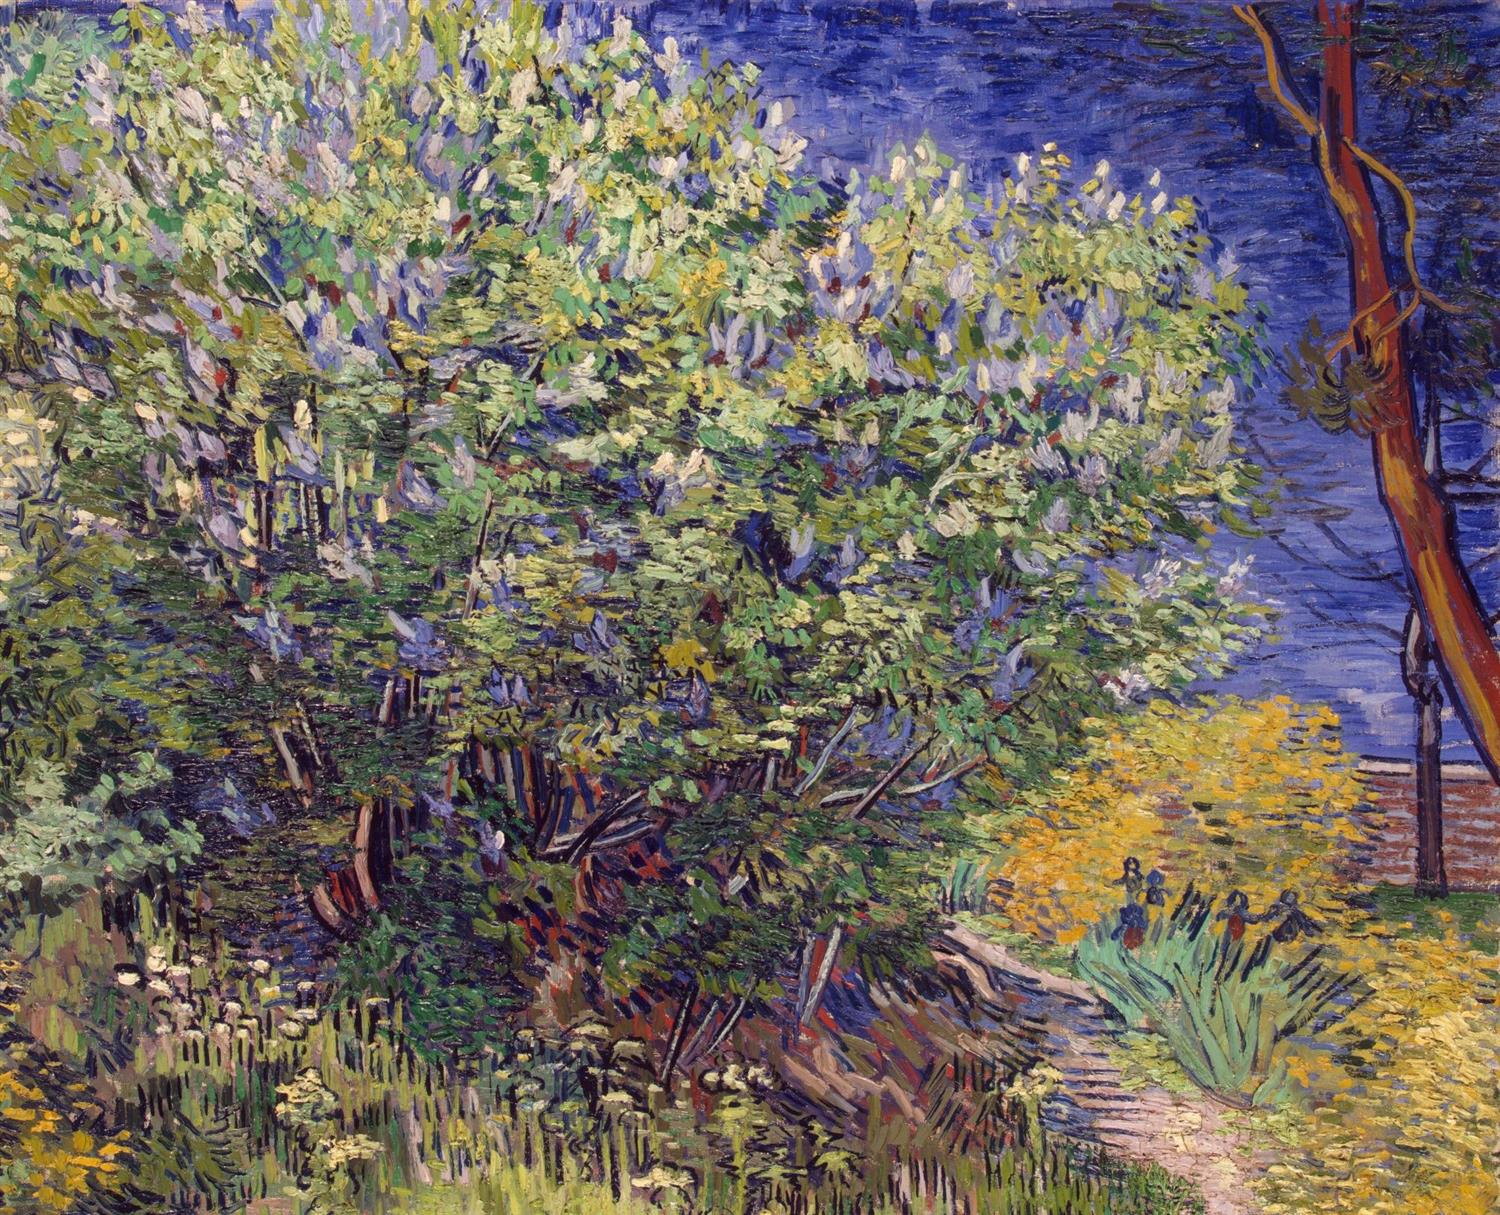 Vincent van Gogh, Lilac Bush (1889)